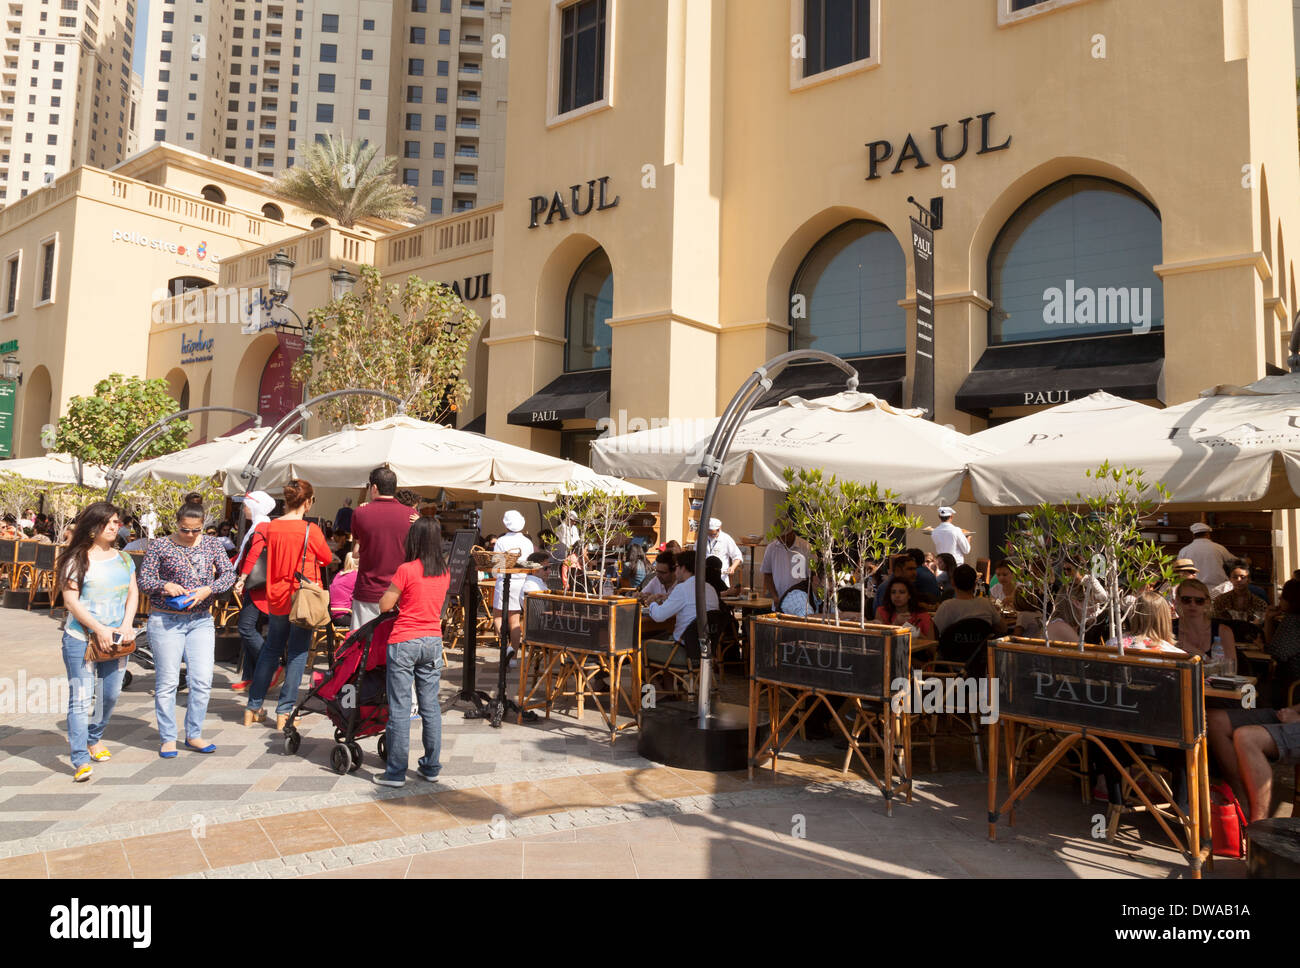 Paul restaurant extérieur, la promenade, la plage de Jumeirah Residences, JBR, DUBAÏ, ÉMIRATS ARABES UNIS, Émirats arabes unis Moyen-orient Banque D'Images